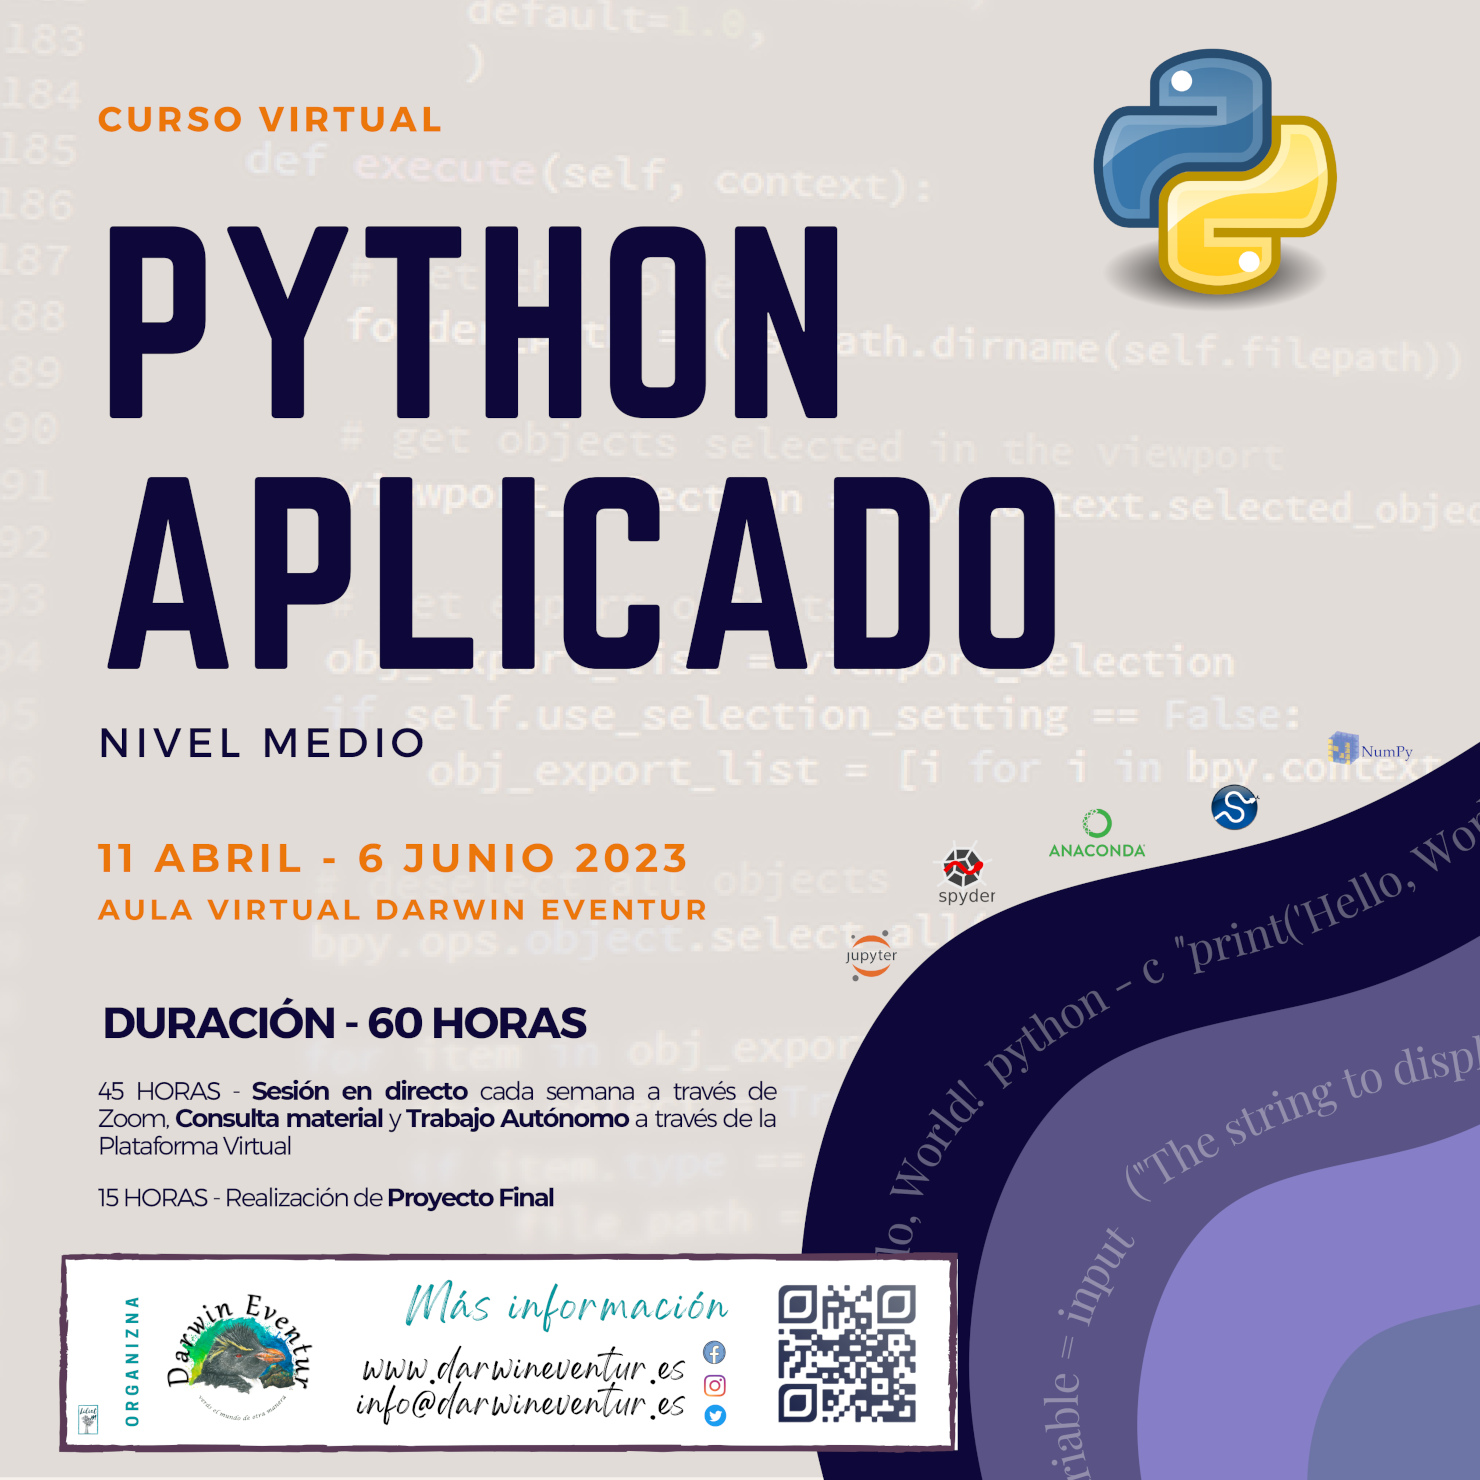 Curso virtual "Python aplicado – nivel medio"